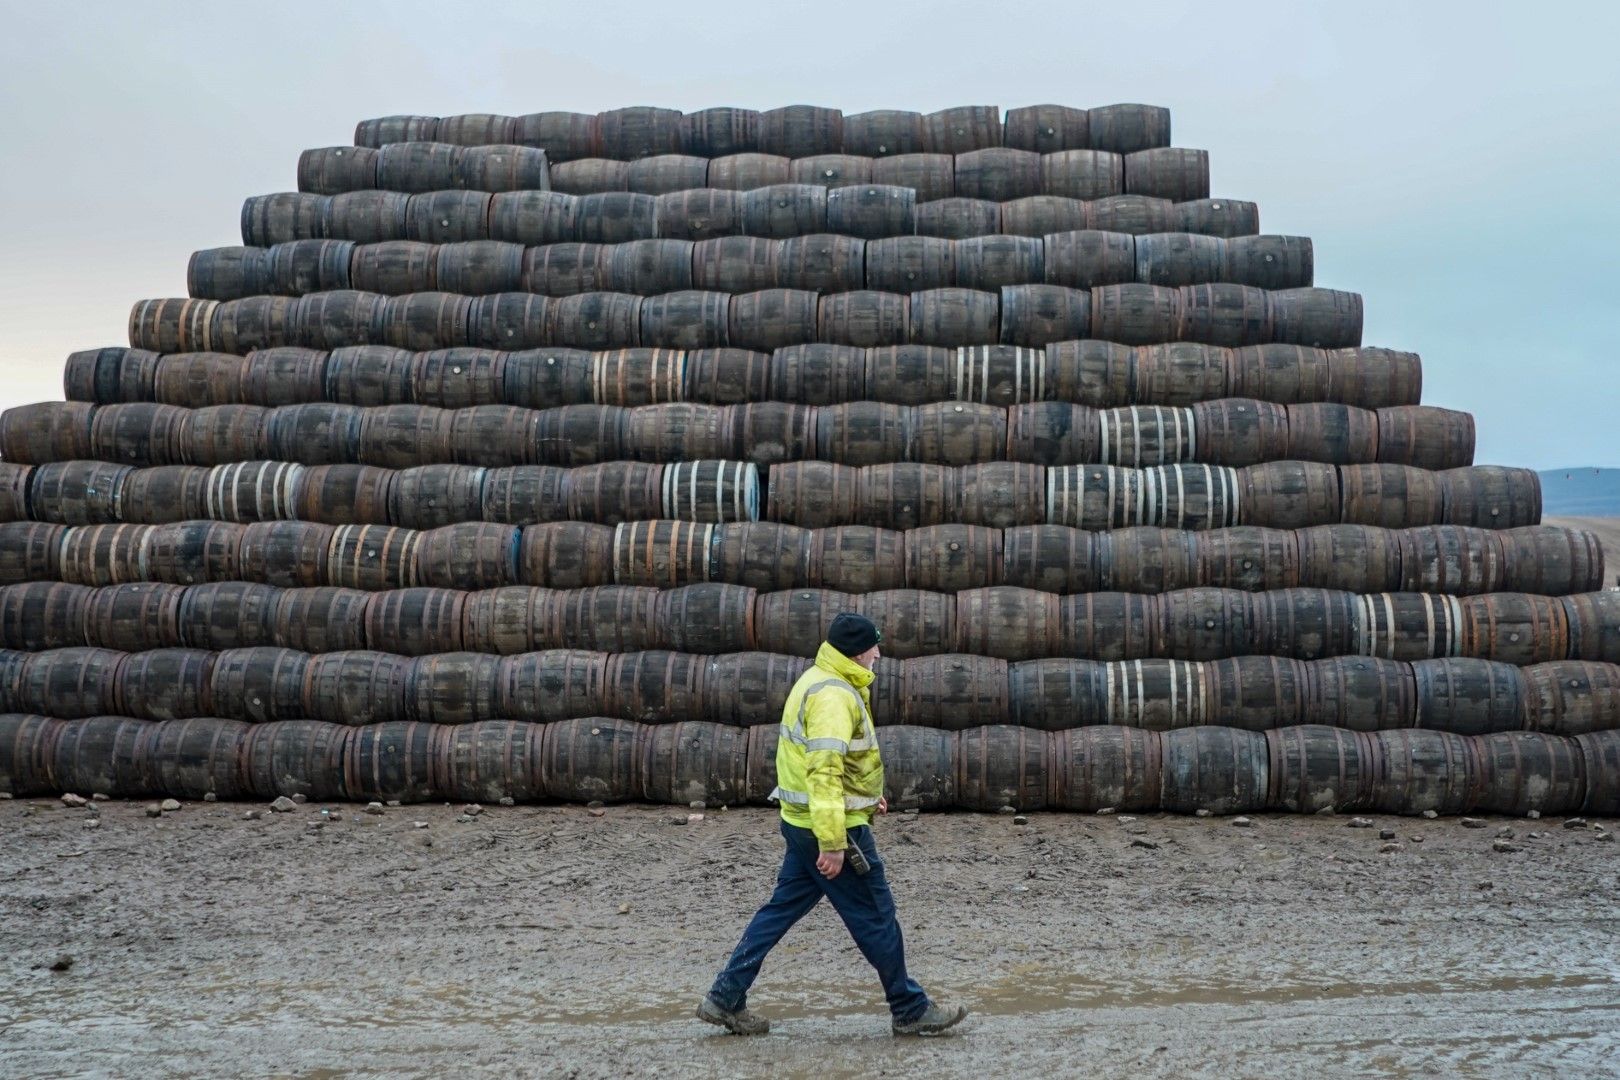 Близо 150 000 бъчви се произвеждат и ремонтират в бъчварница "Спейсайд" в Шотландия